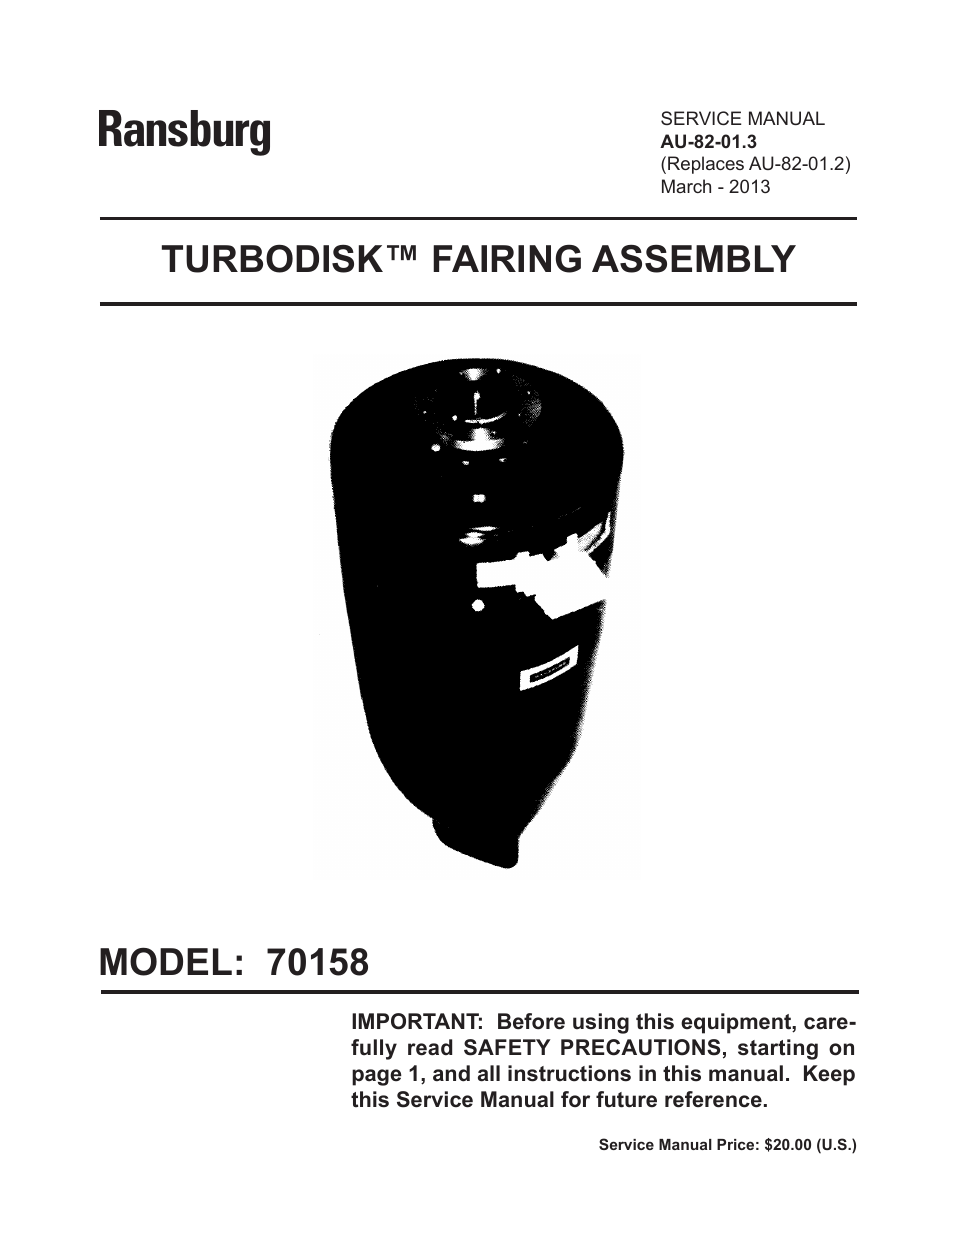 Turbodisk Fairing Assembly 70158